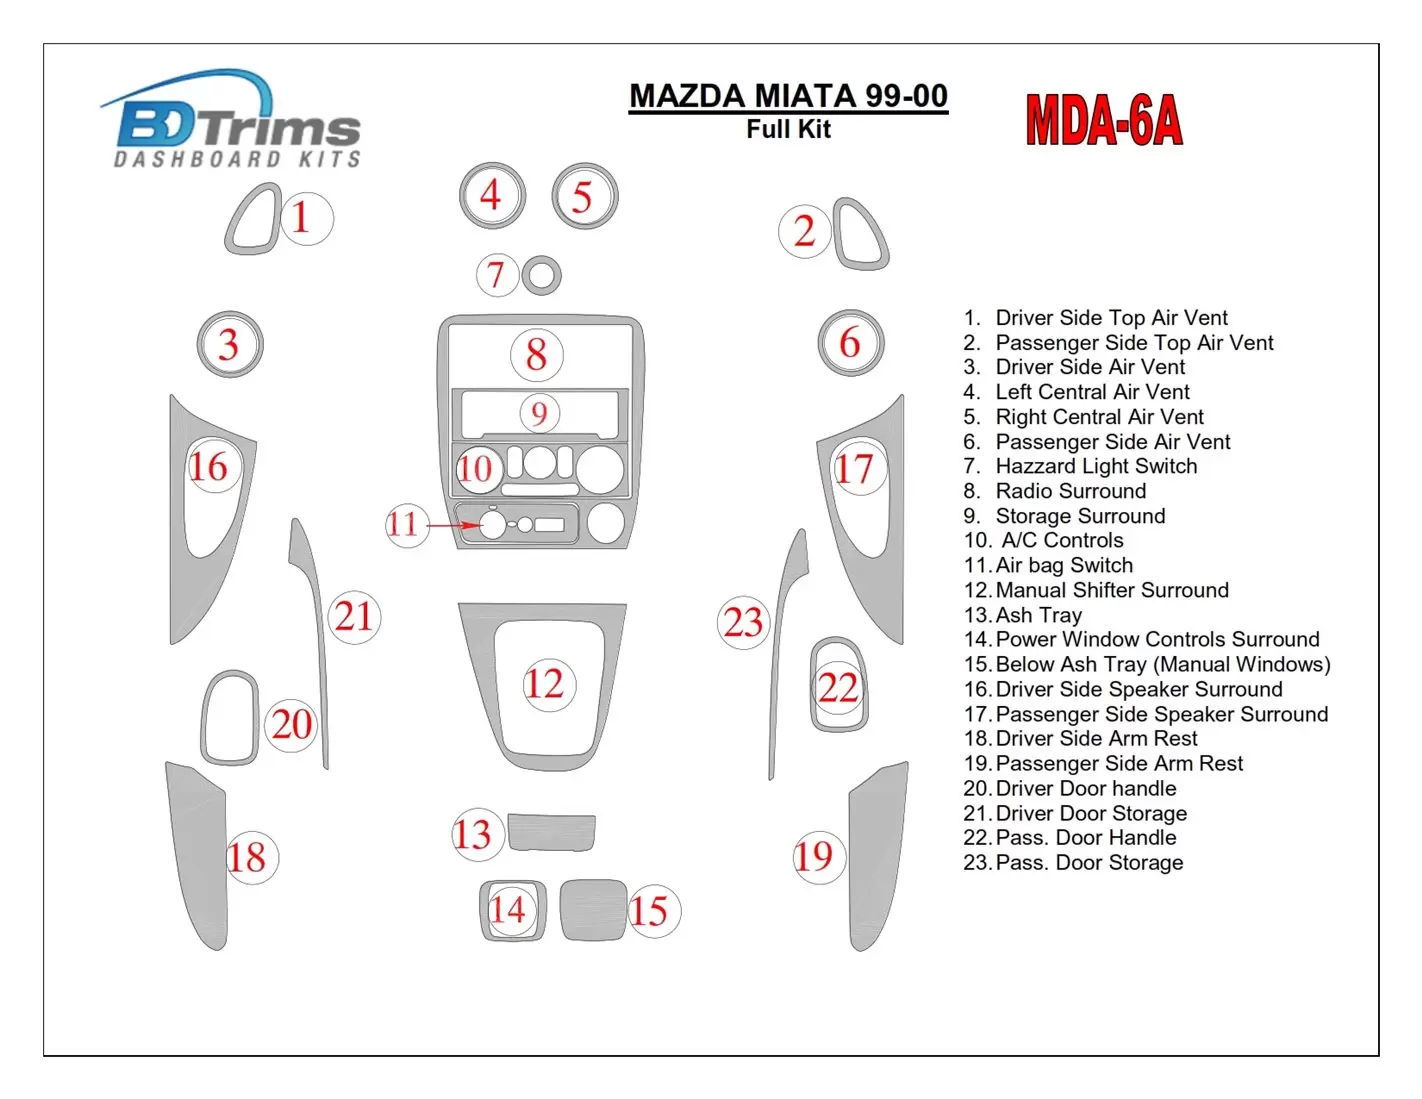 Mazda Miata 1999-2000 Ensemble Complet, 19 Parts set BD Kit la décoration du tableau de bord - 1 - habillage decor de tableau de